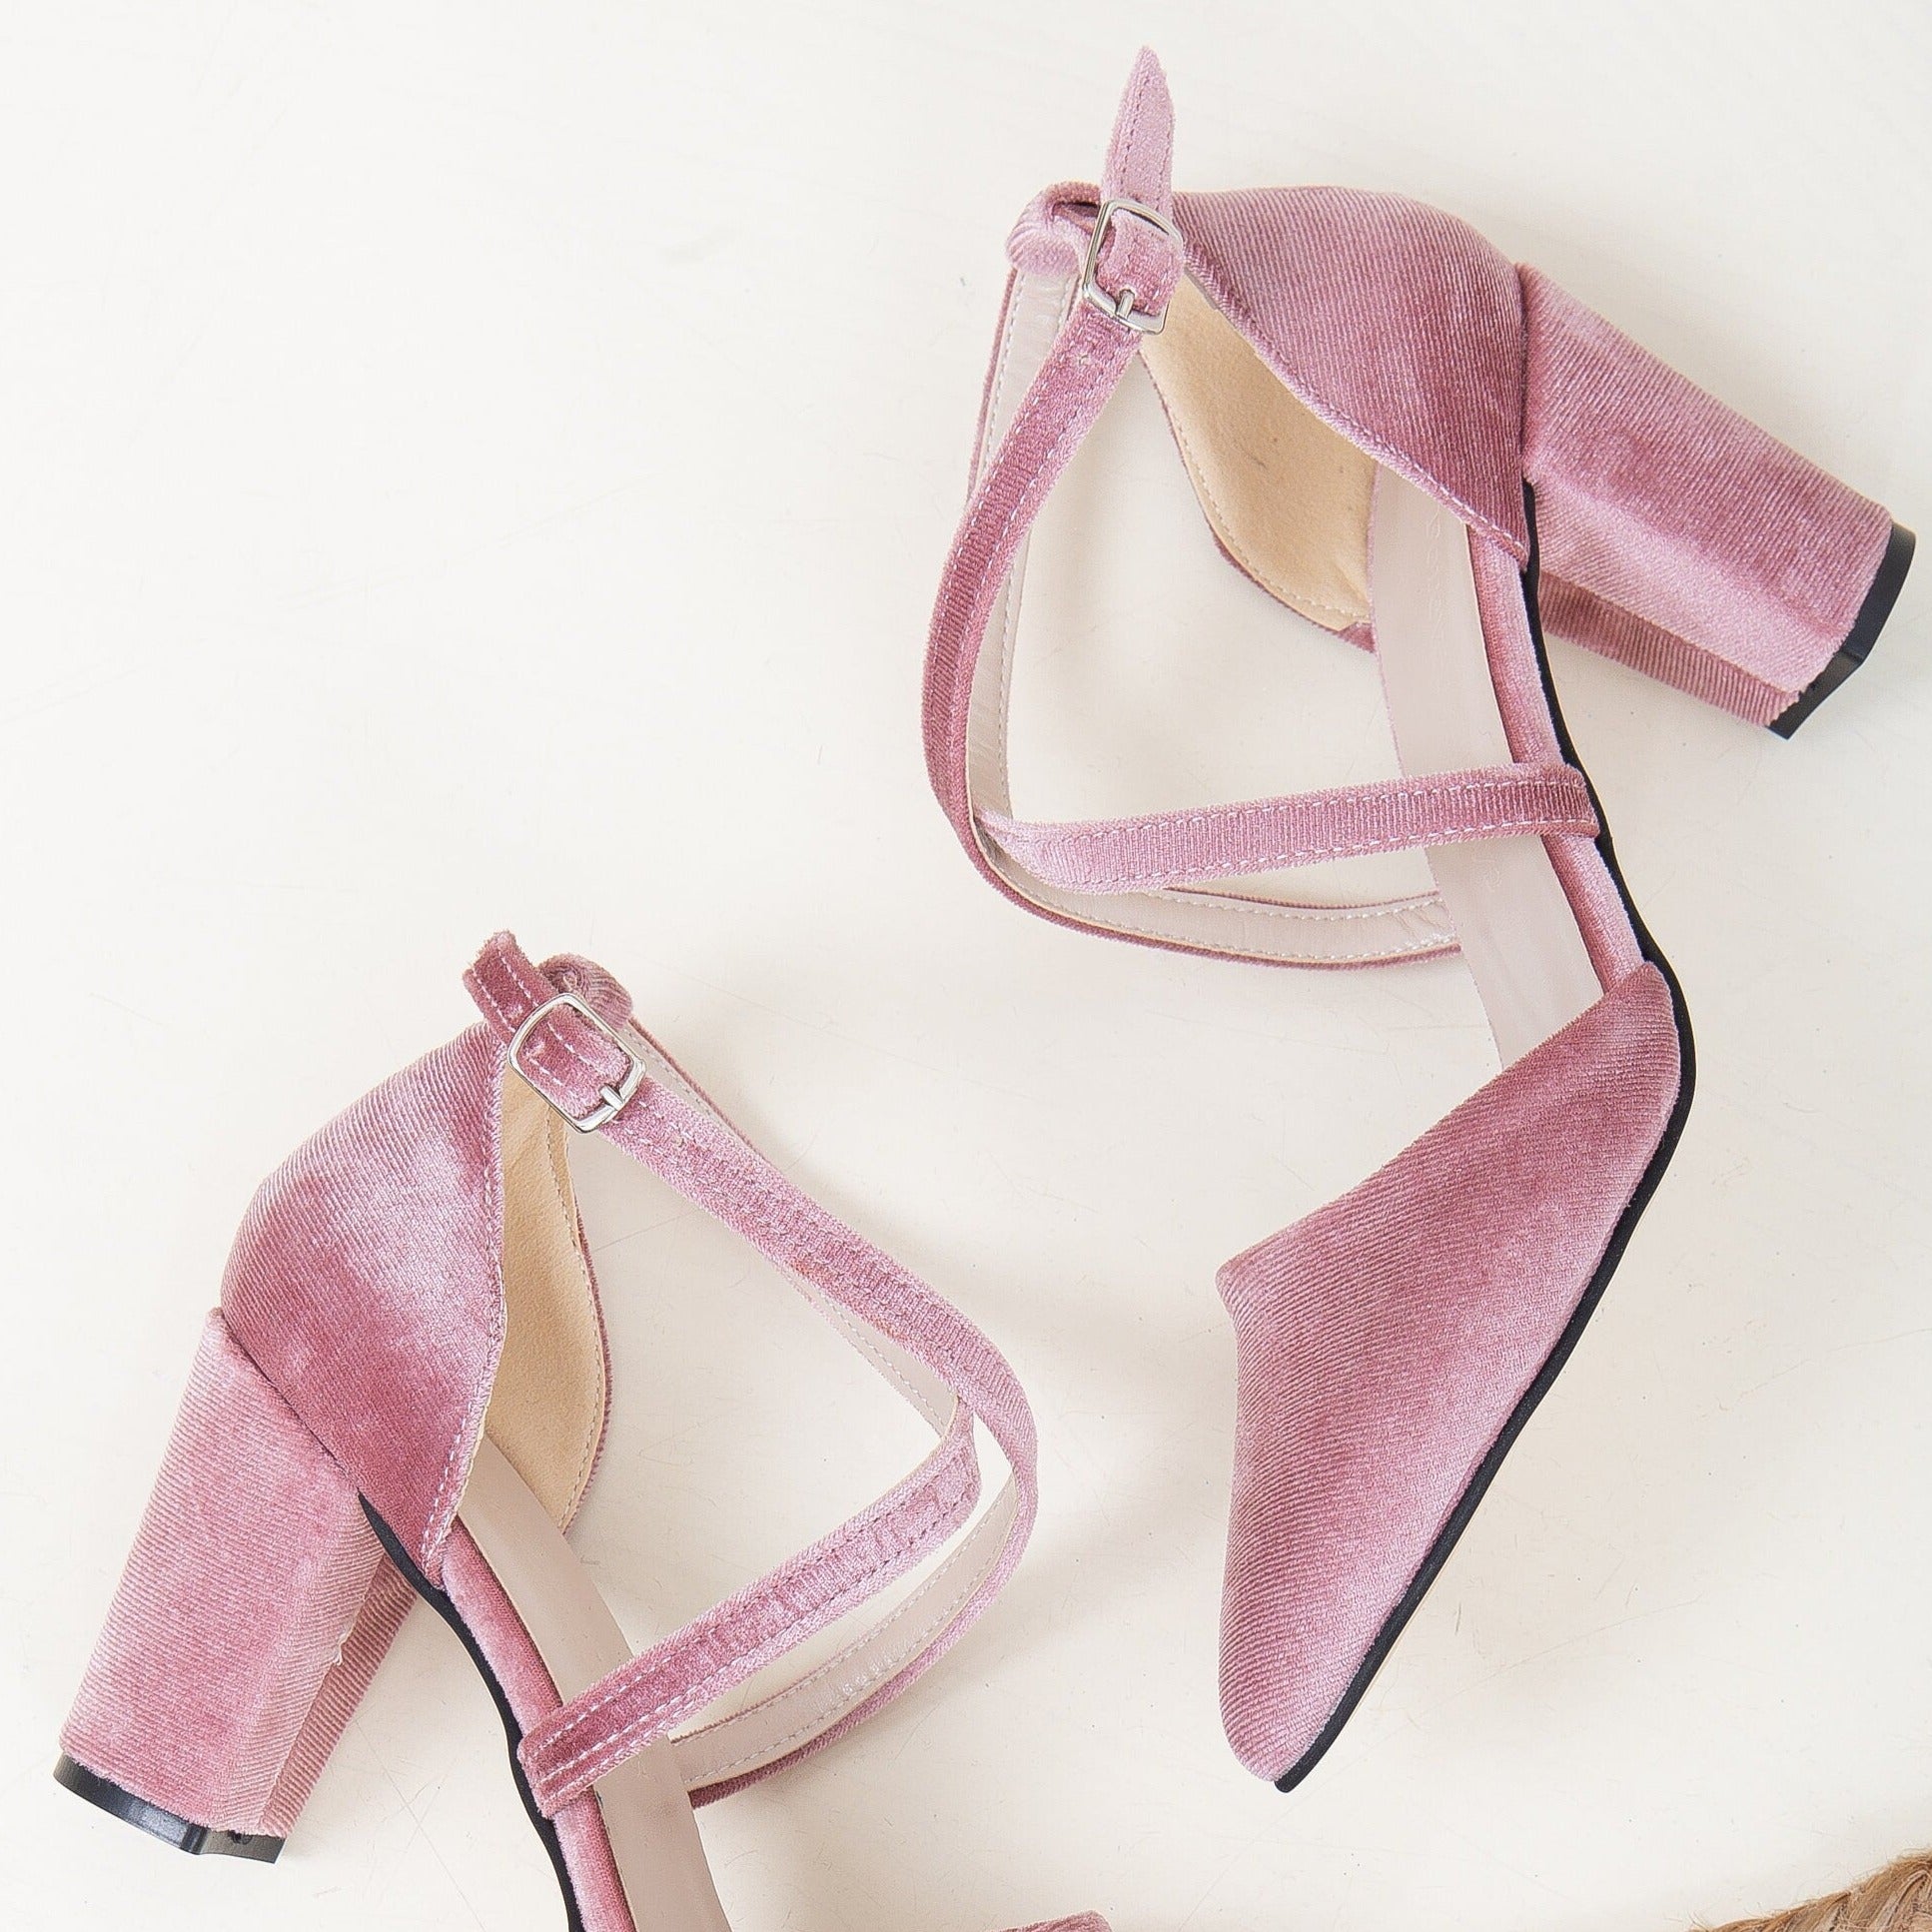 Blush Velvet Heels, Blush Bridal Shoes, Light Pink Velvet Shoes, Velvet Wedding Shoes, Pink Heels, Blush Block Heels, Velvet Bridal Heels